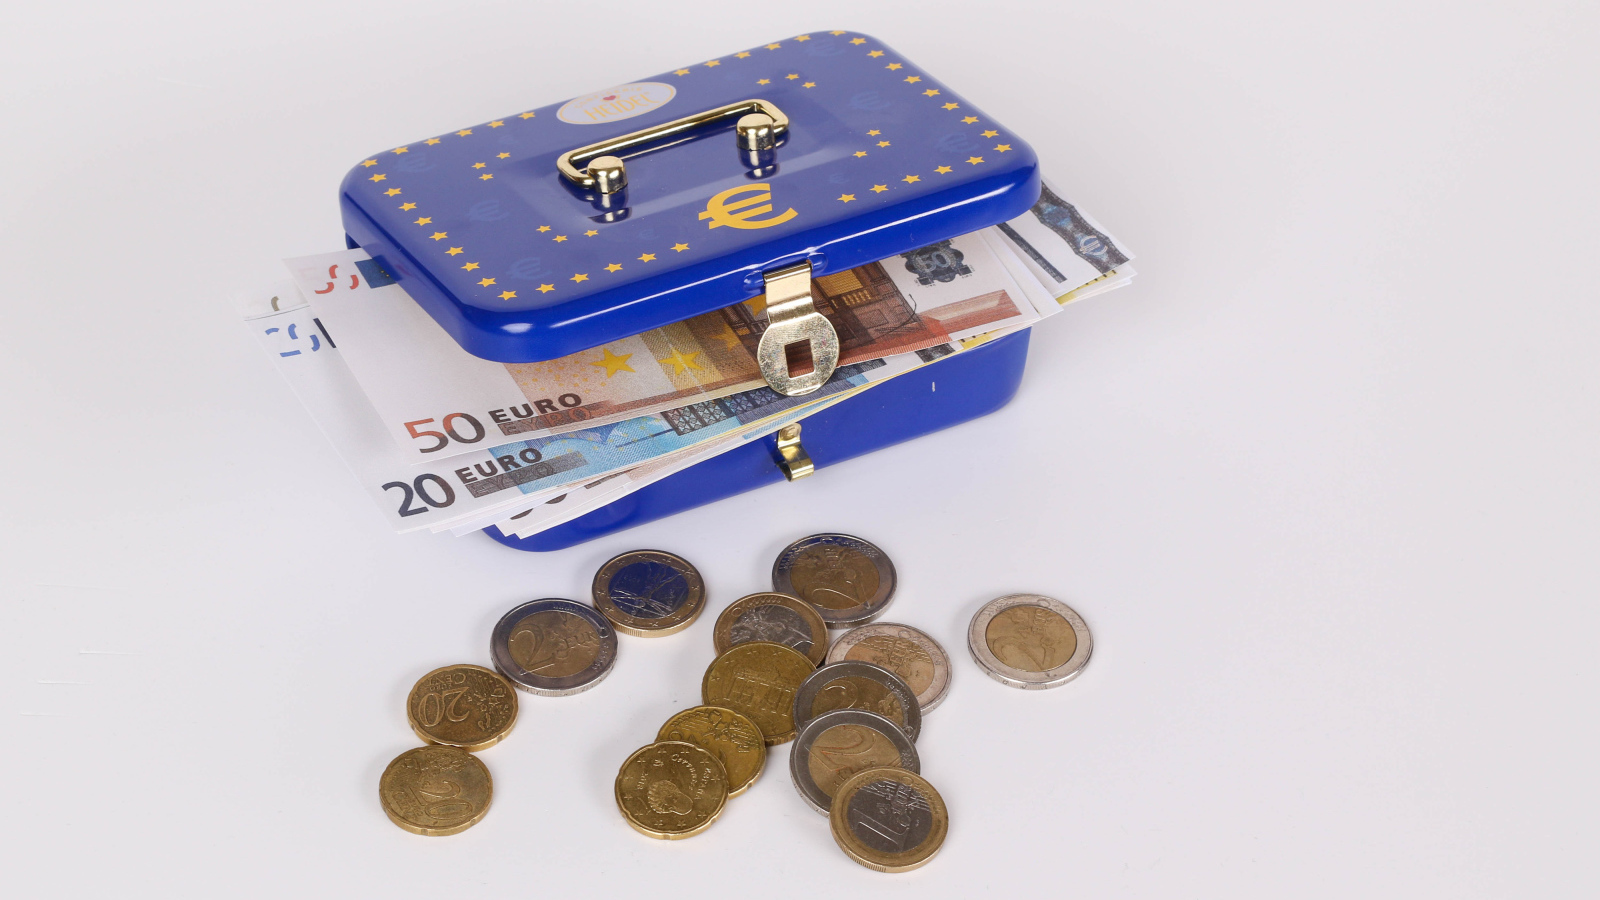 Синяя копилка чемодан с деньгами и монетами на сером фоне